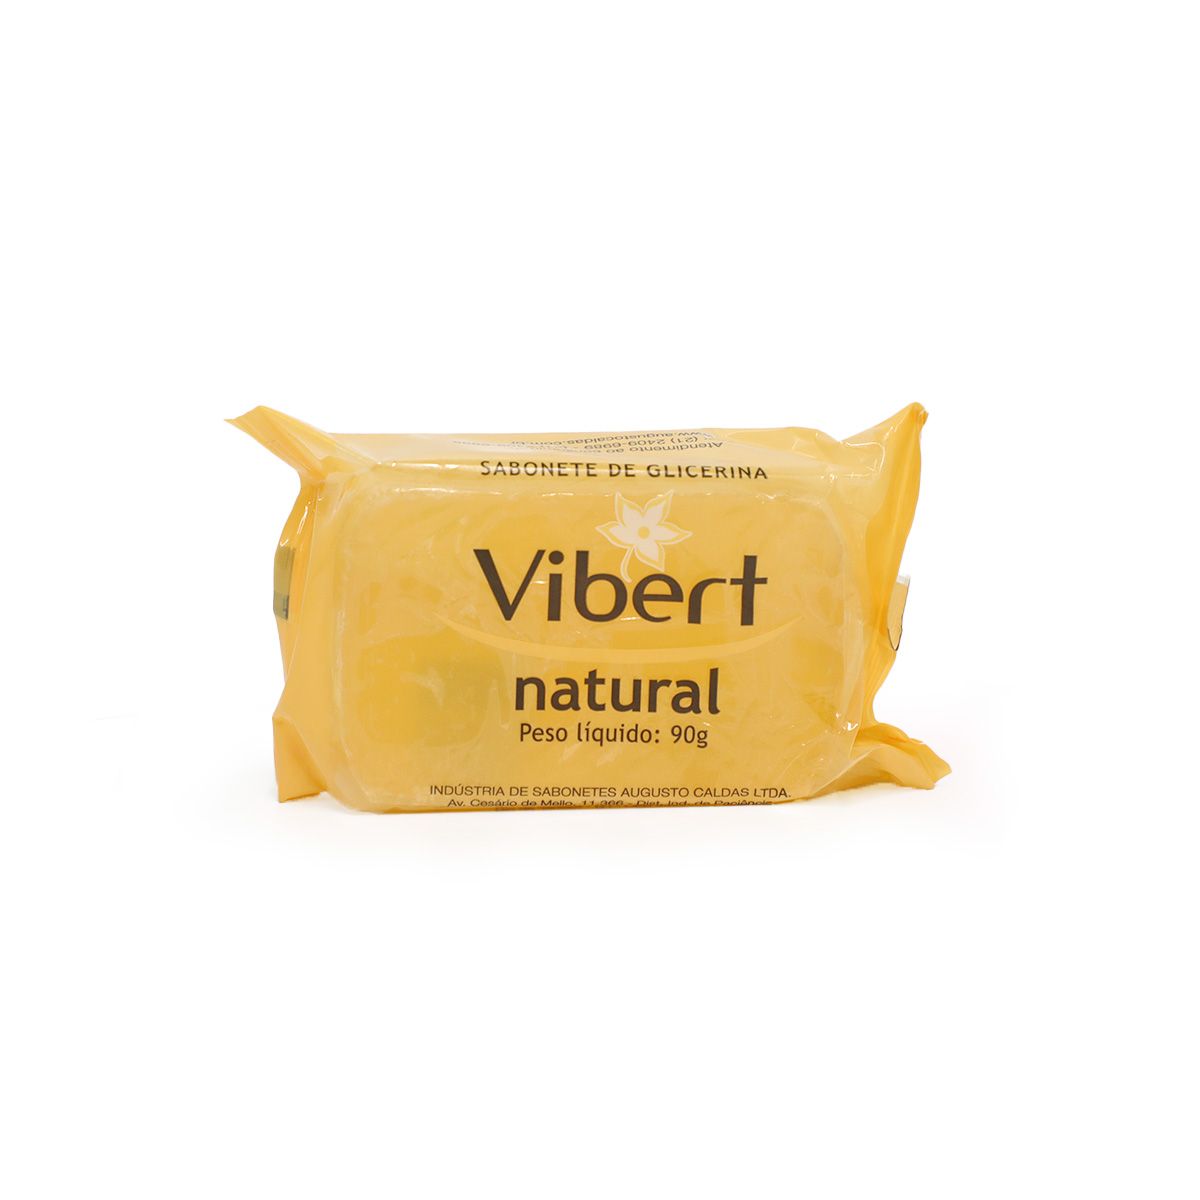 Sabonete de Glicerina Vibert Natural 90g